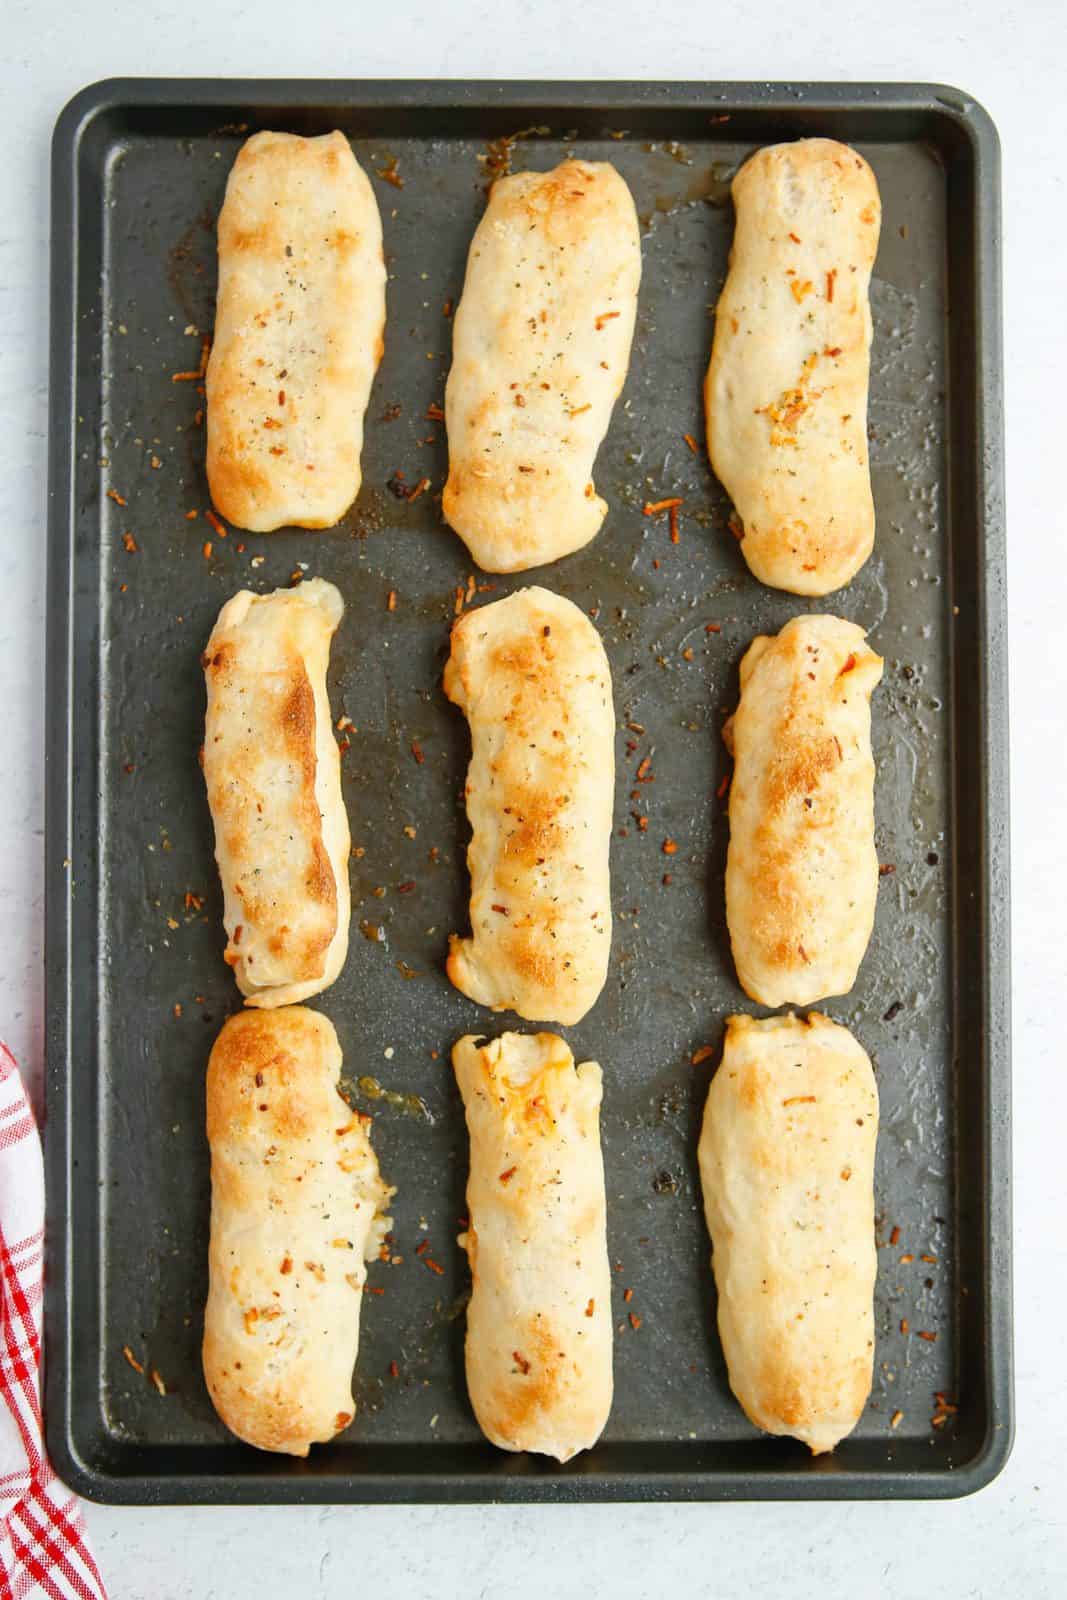 Baked Pepperoni Roll Breadsticks on baking sheet.